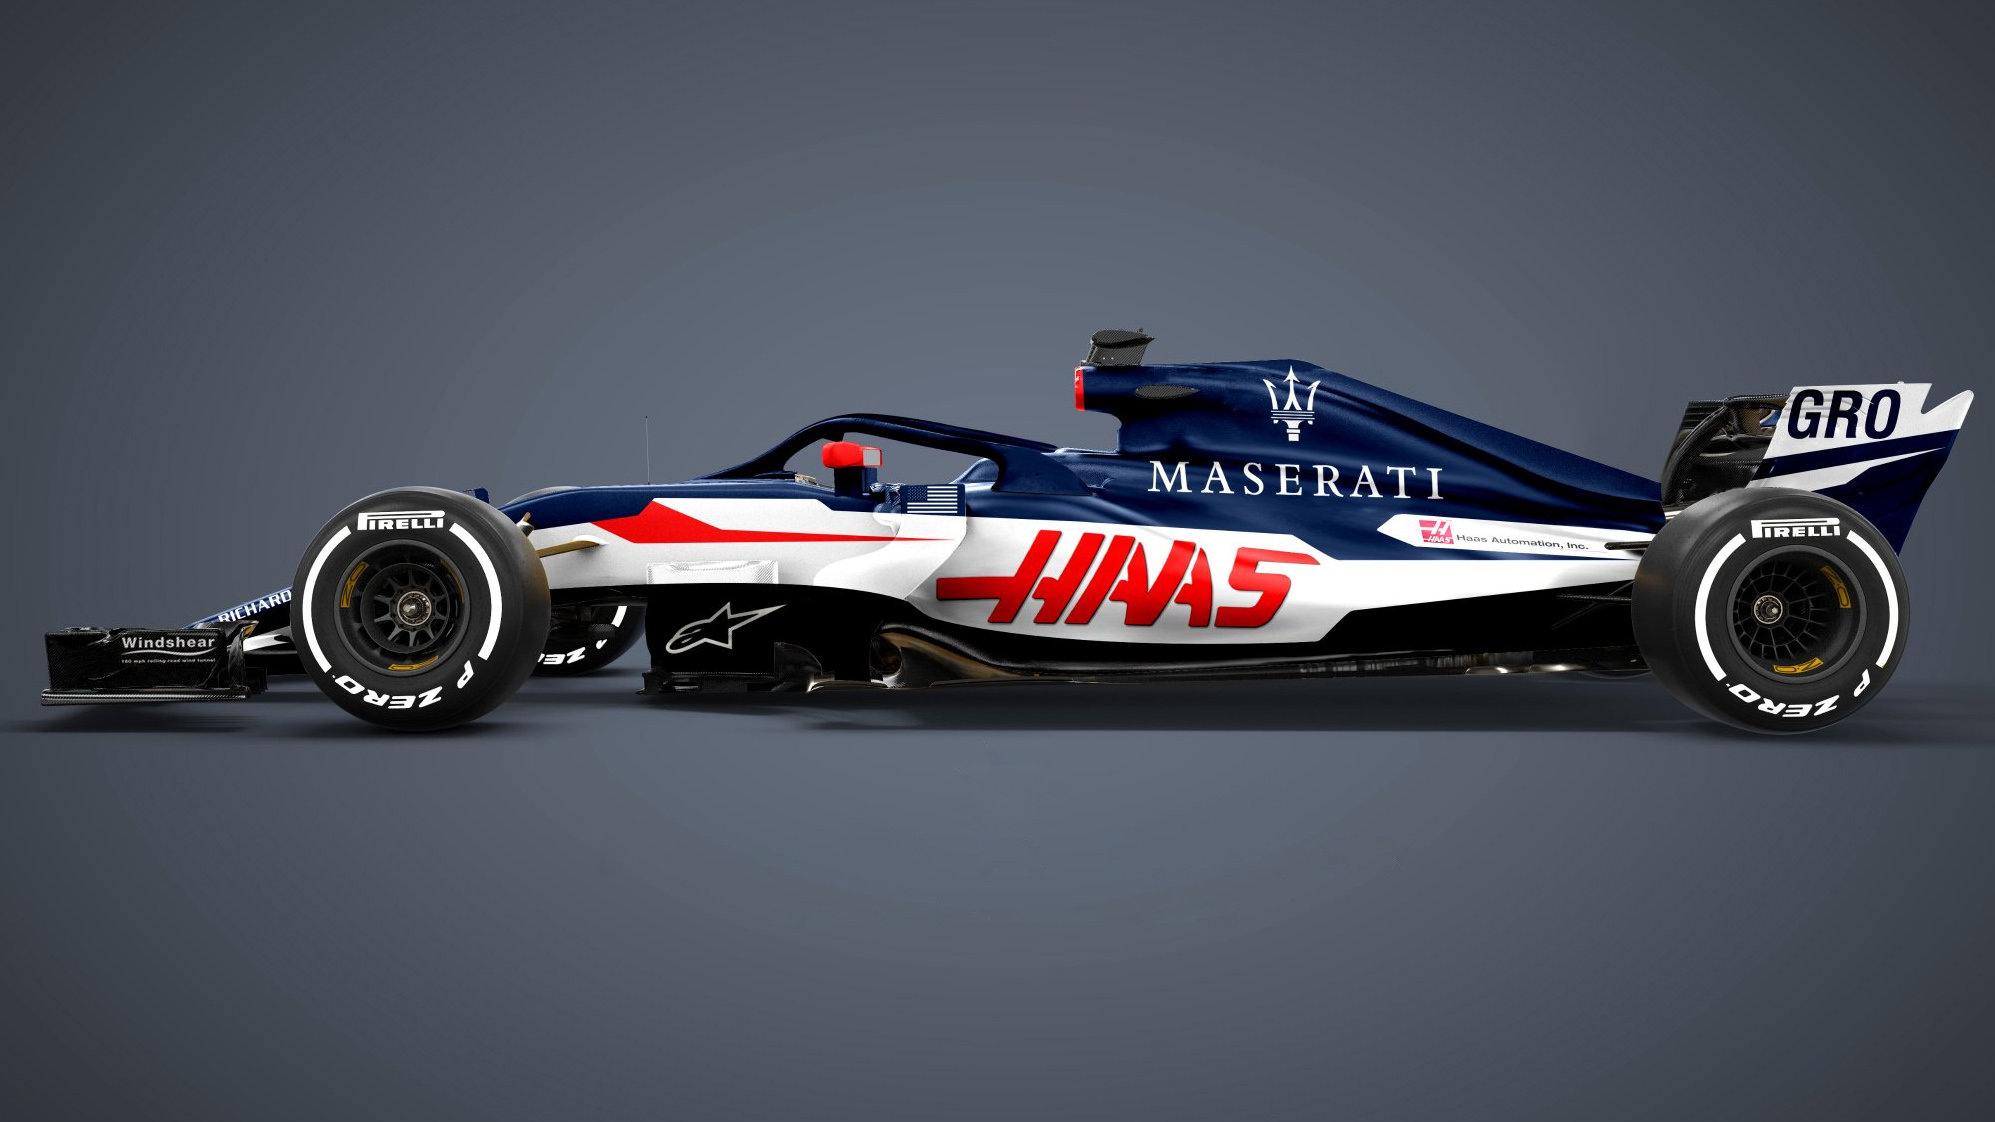 Grafický návrh vozu Haas - Maserati